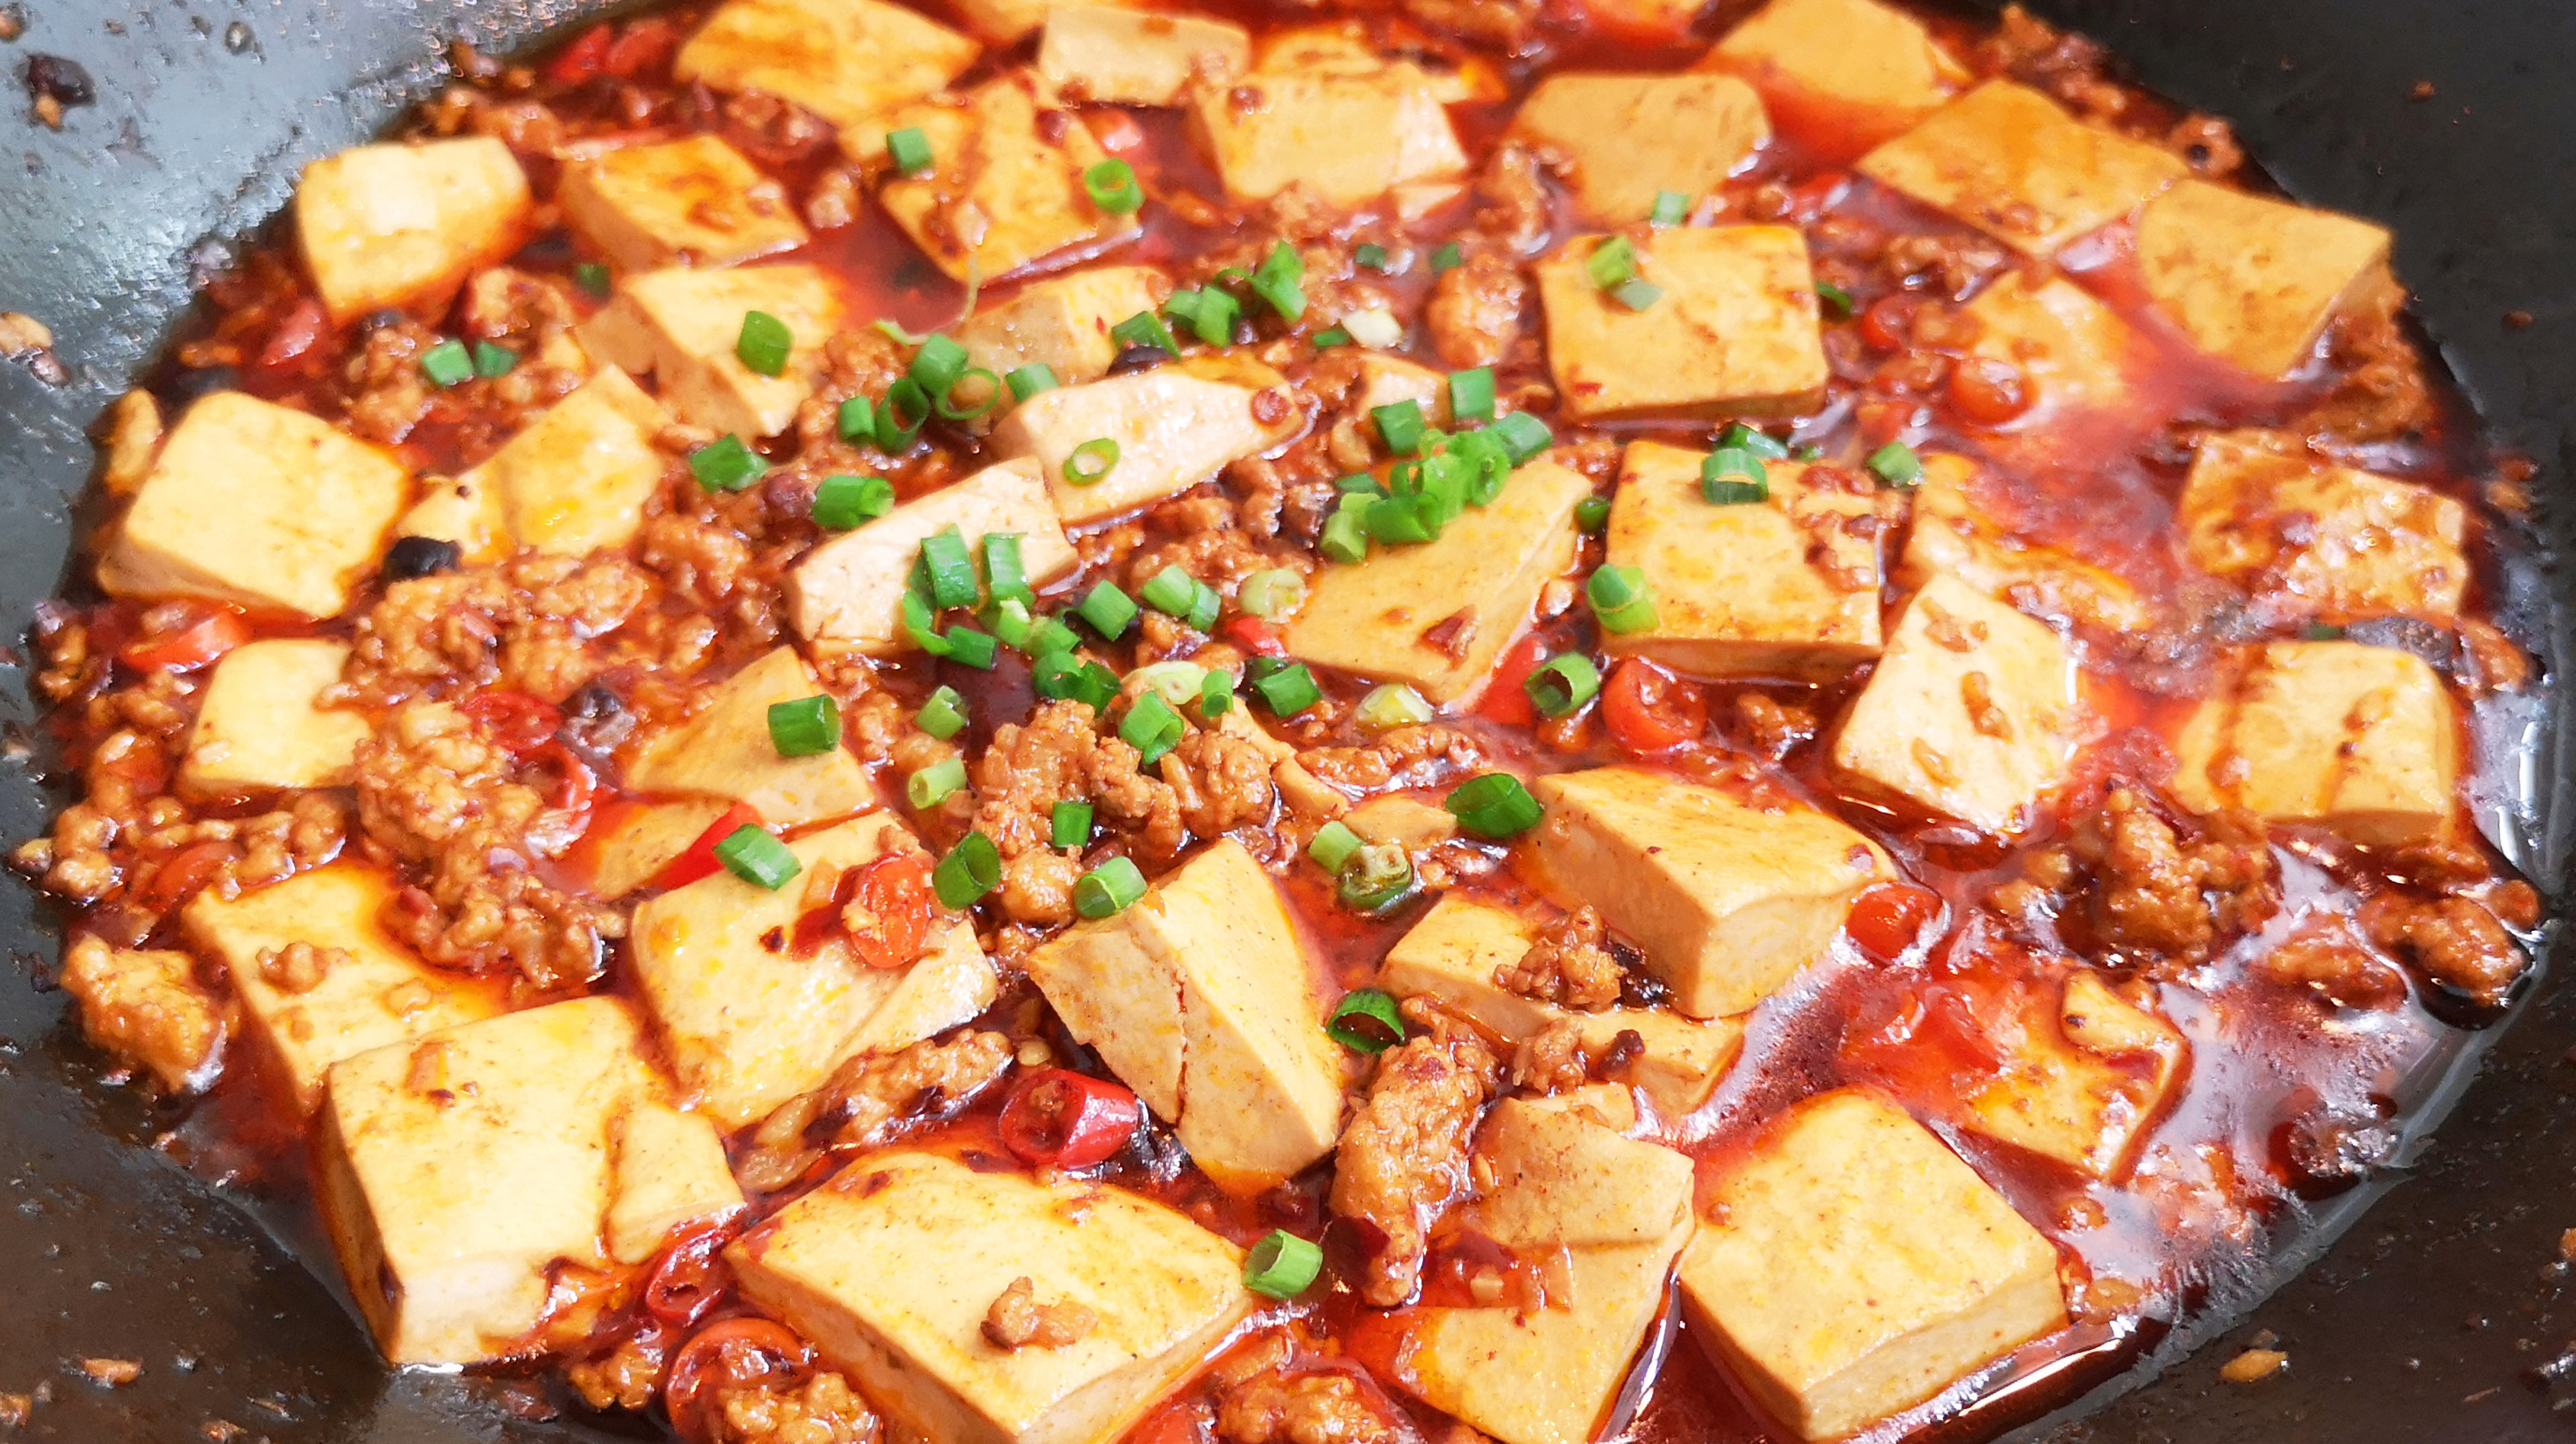 豆腐做法,麻辣鲜香,滑嫩而不碎,好吃下饭,做法简单 服务升级 3土豆炒